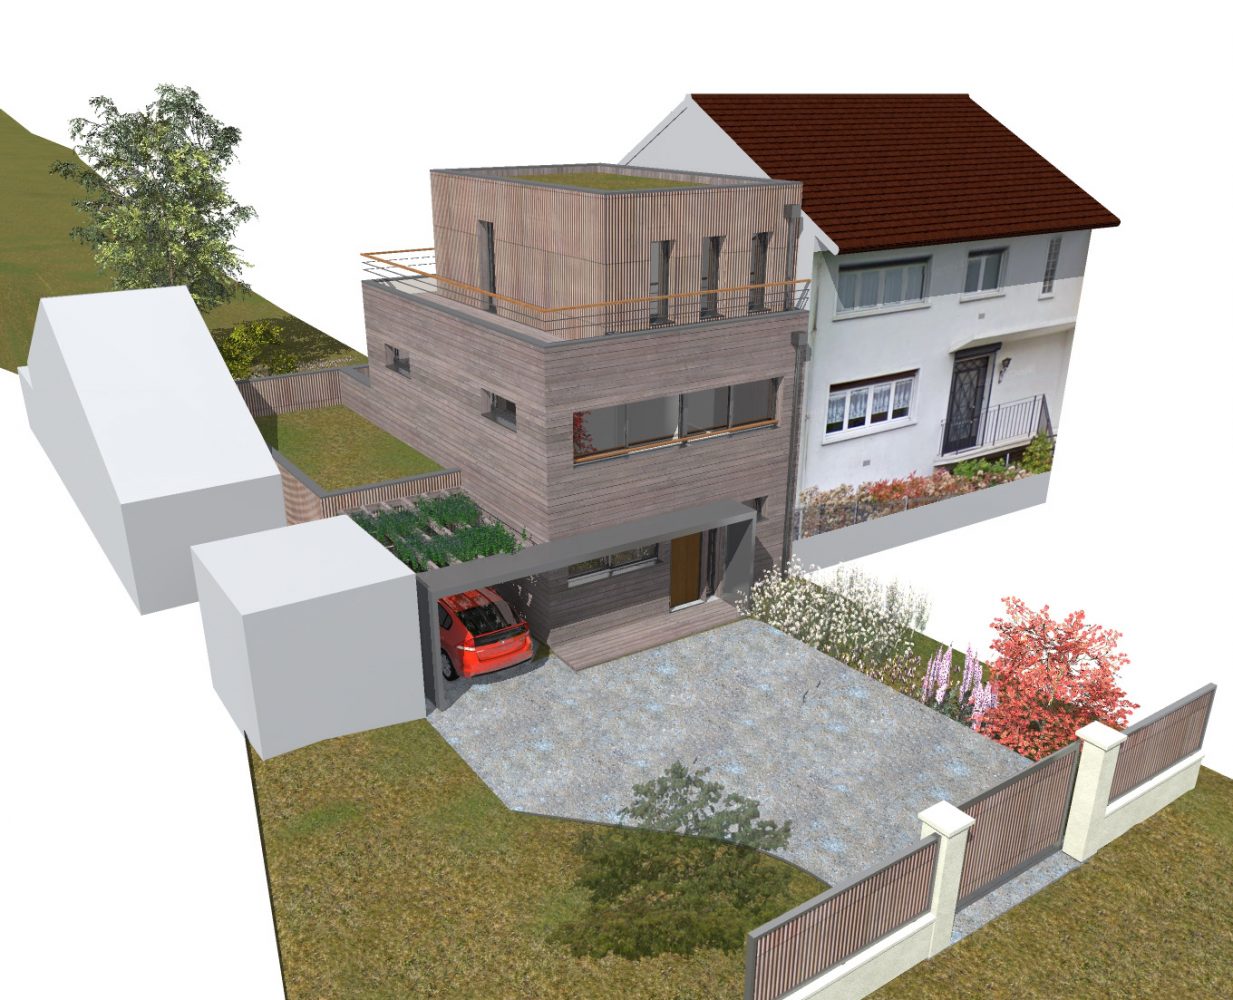 Philippe_Zerbib_Architecte_construction_maisons_ossature_bois_projet_maison-Vollaire-View 0_7